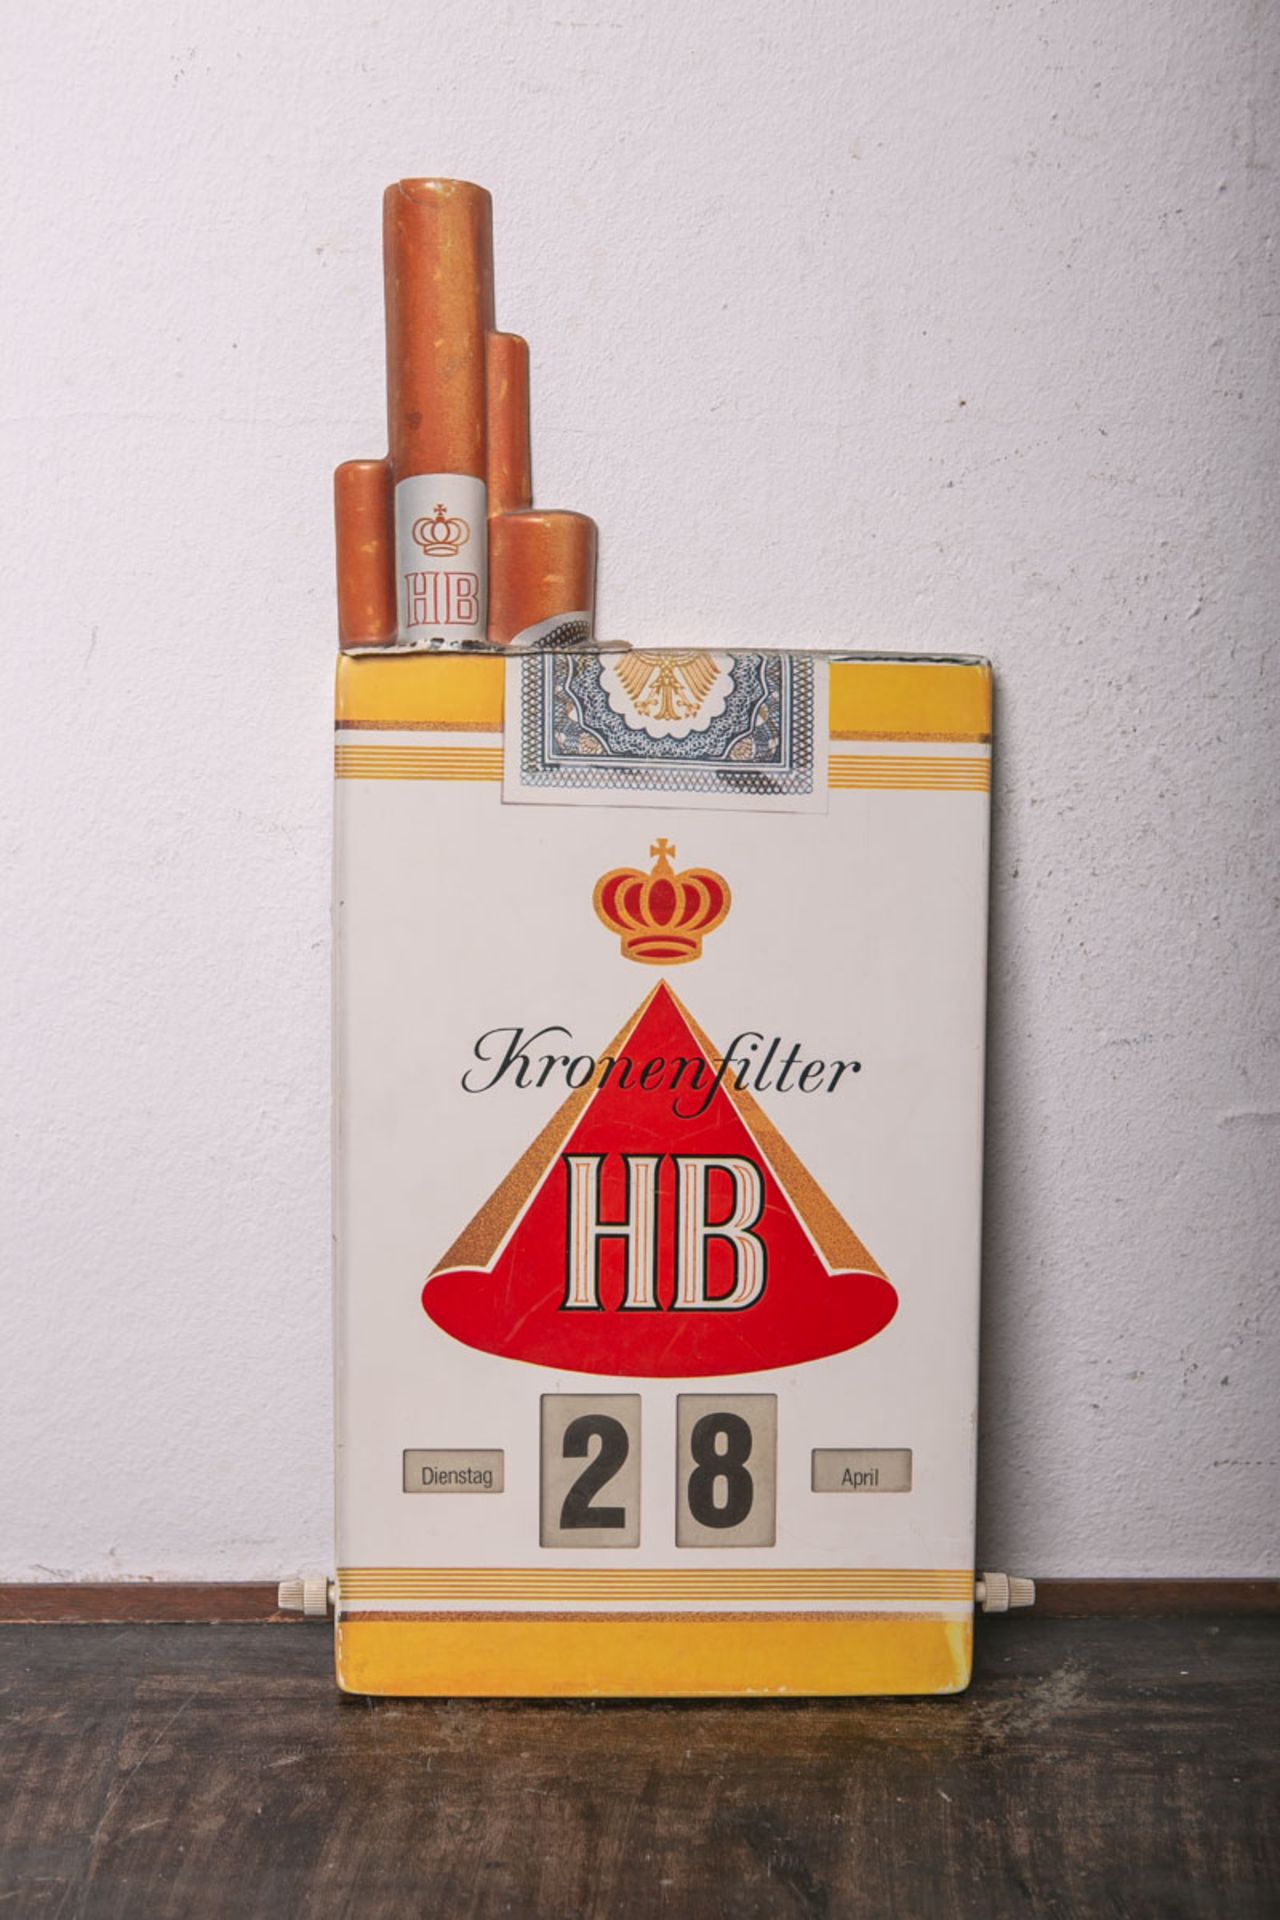 Drehkalender "Kronenfilter HB" (wohl 20. Jh.), hochrechteckiges Werbeschild aus Kunststoff, m.